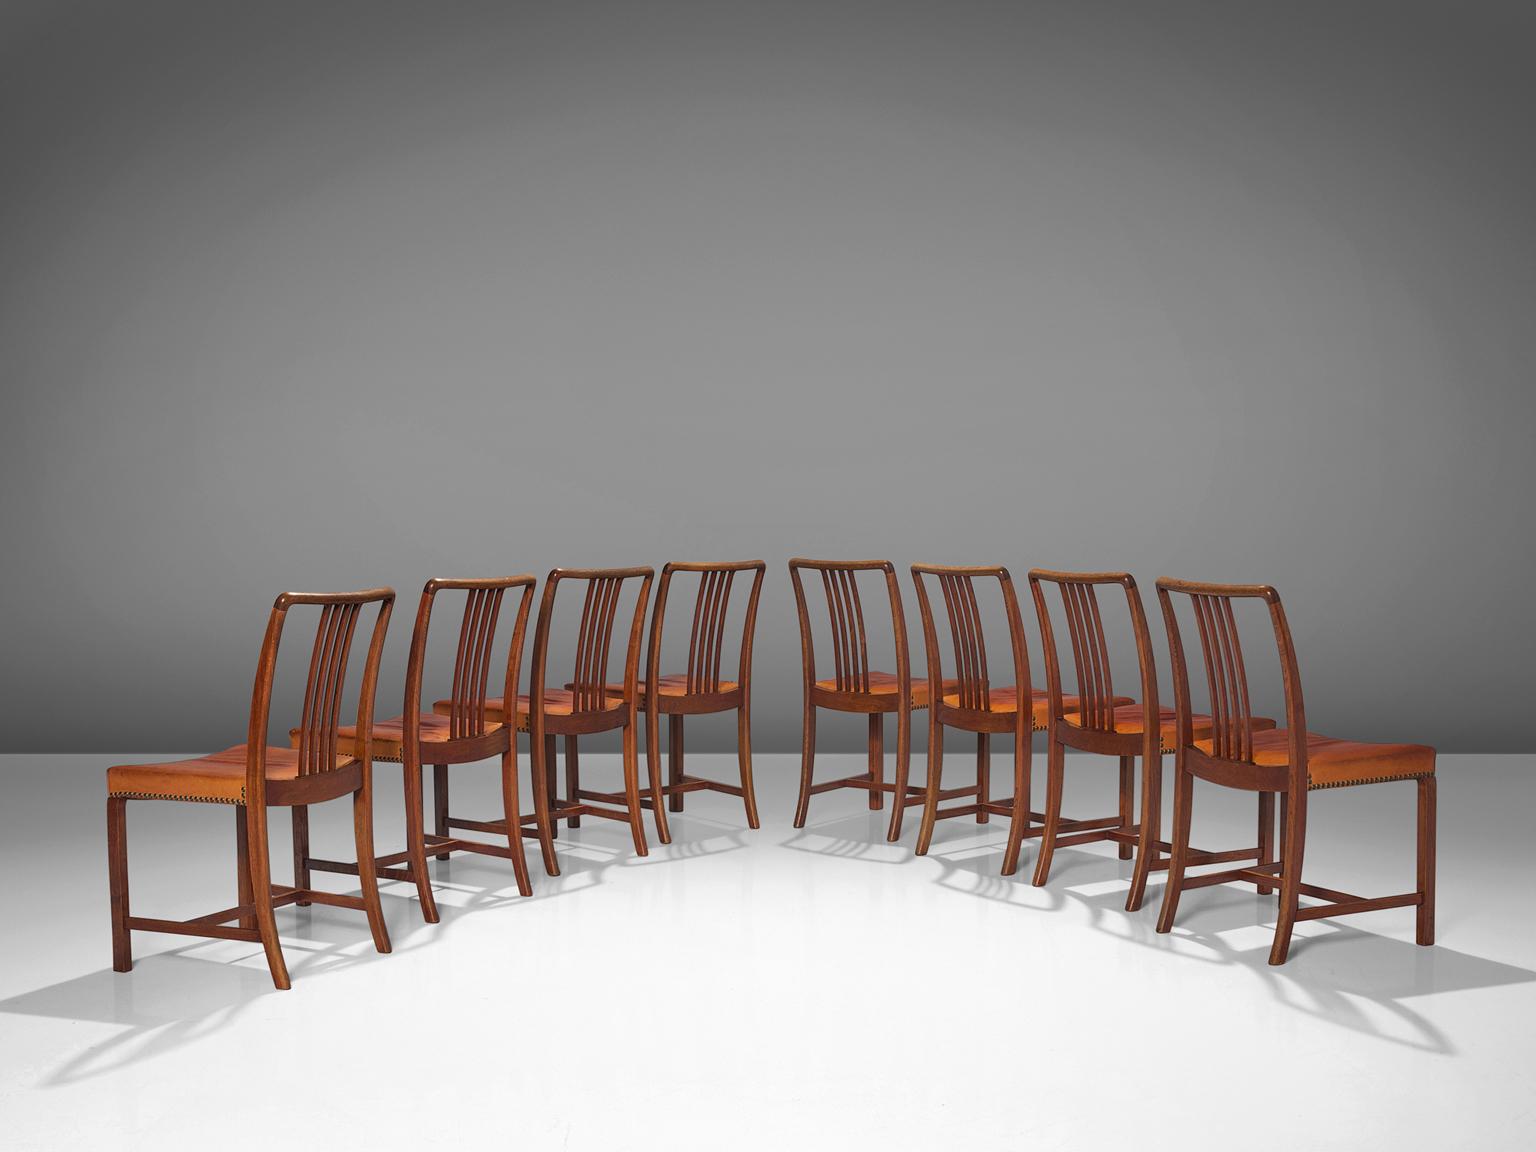 Jørgen Christensen, ensemble de huit chaises de salle à manger, cuir, chêne, laiton, Danemark, années 1950 

Ensemble exclusif de huit chaises de salle à manger conçu par le designer et ébéniste danois Jørgen Christensen. Les sièges sont garnis de